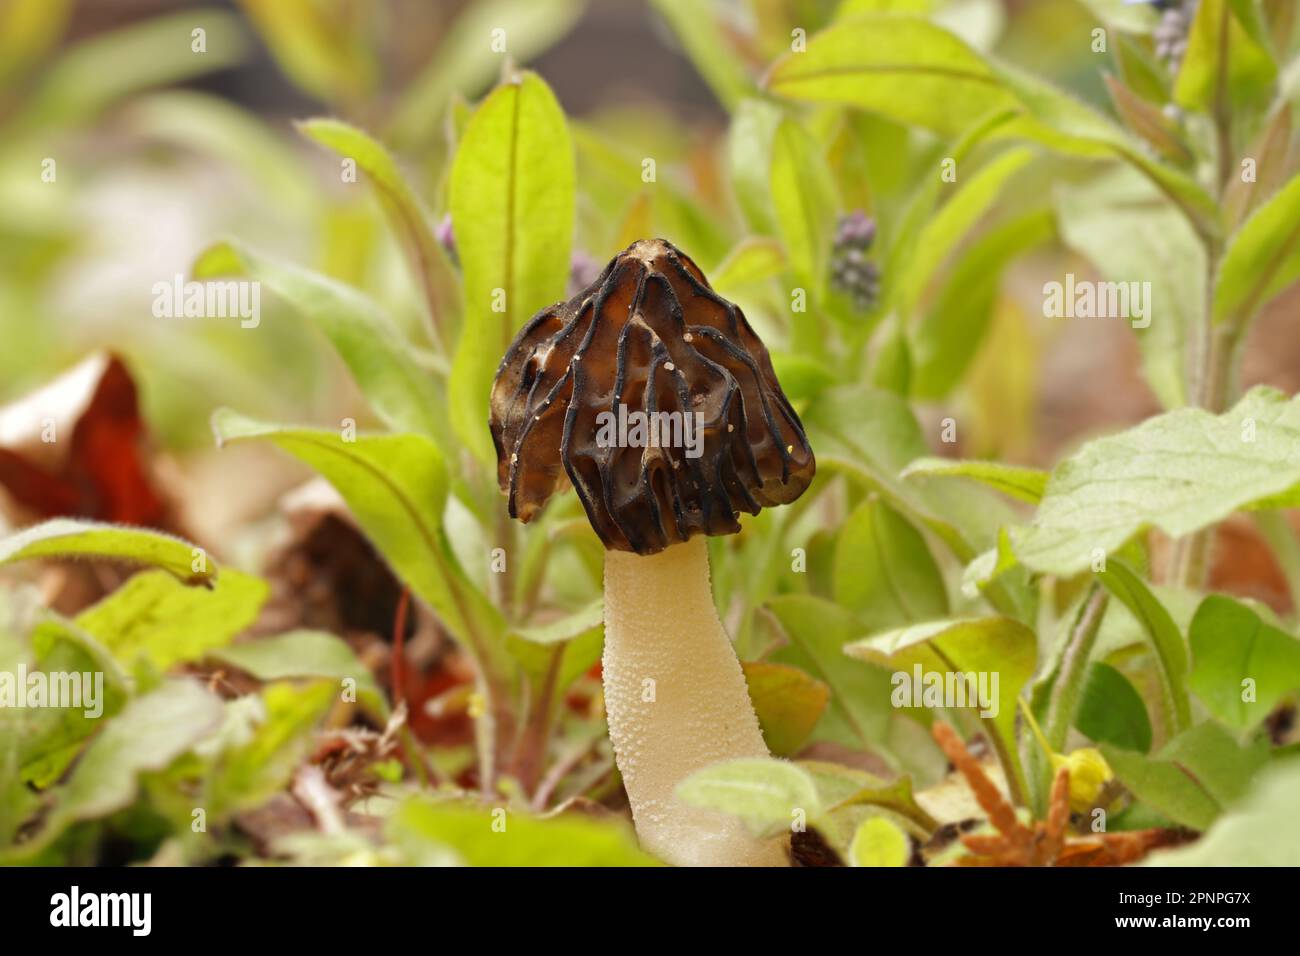 Im Wald wächst ein kleiner, junger essbarer Pilz Morchella semilibera, gemeinhin als halbfreie Morchel bezeichnet. Die braune Kappe ist halbkugelförmig, spitz Stockfoto